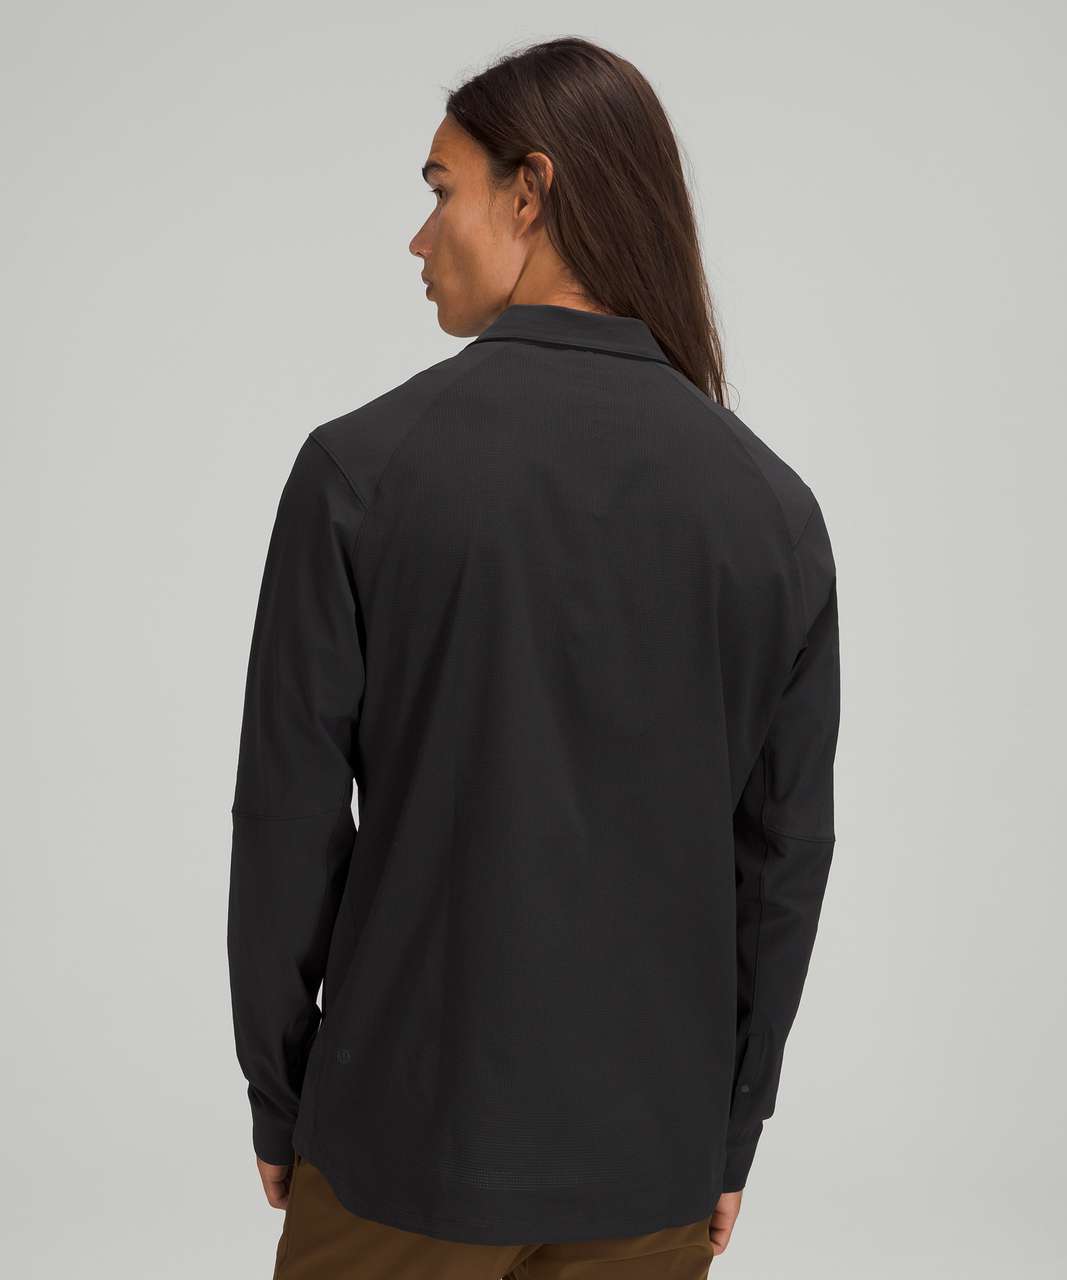 Lululemon Double Pocket Long Sleeve Overshirt - Black